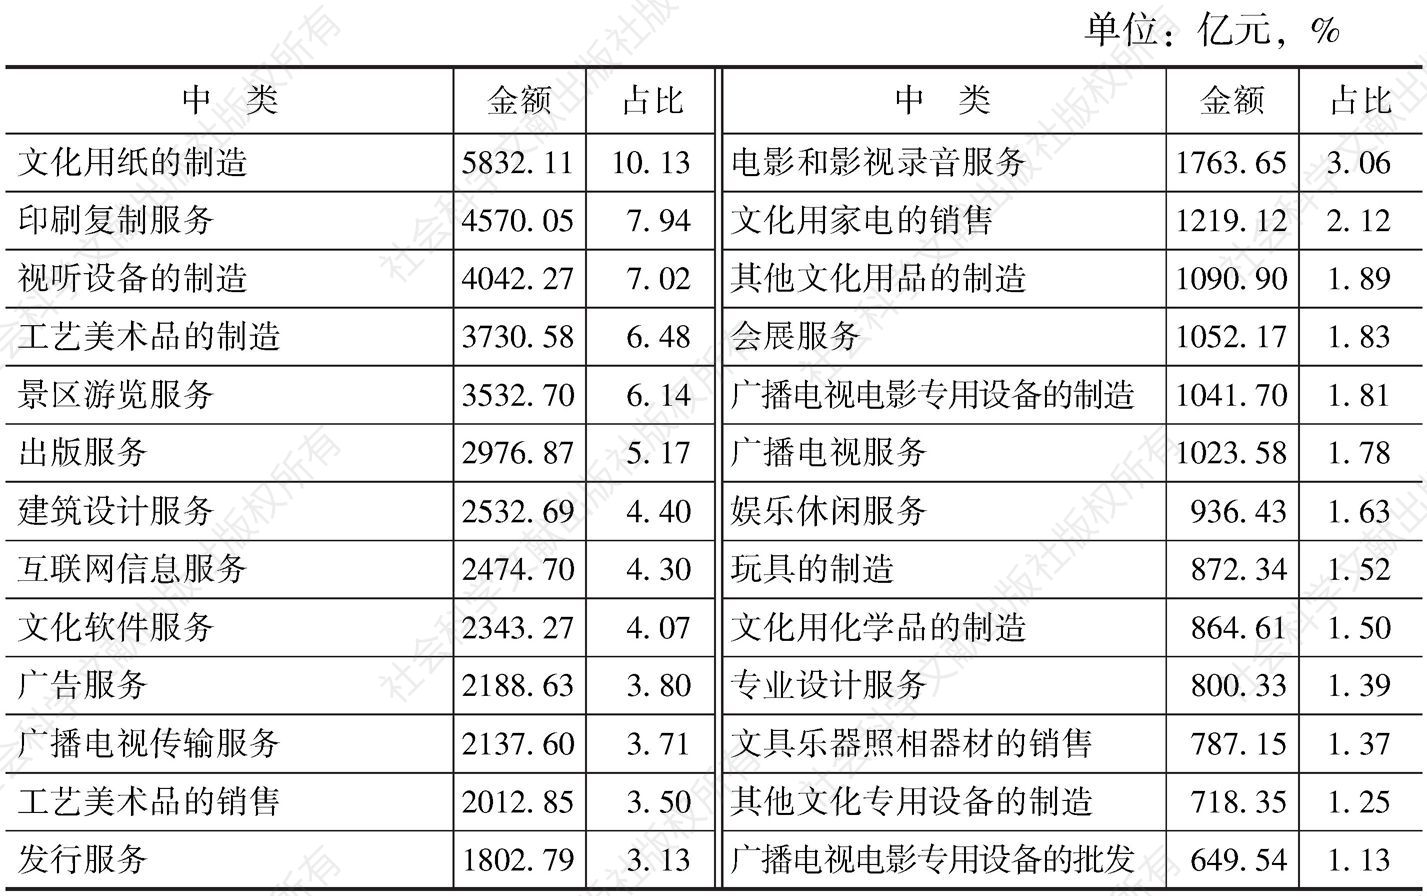 表4-9 2013年末各中类规模以上文化企业资产总额及占比